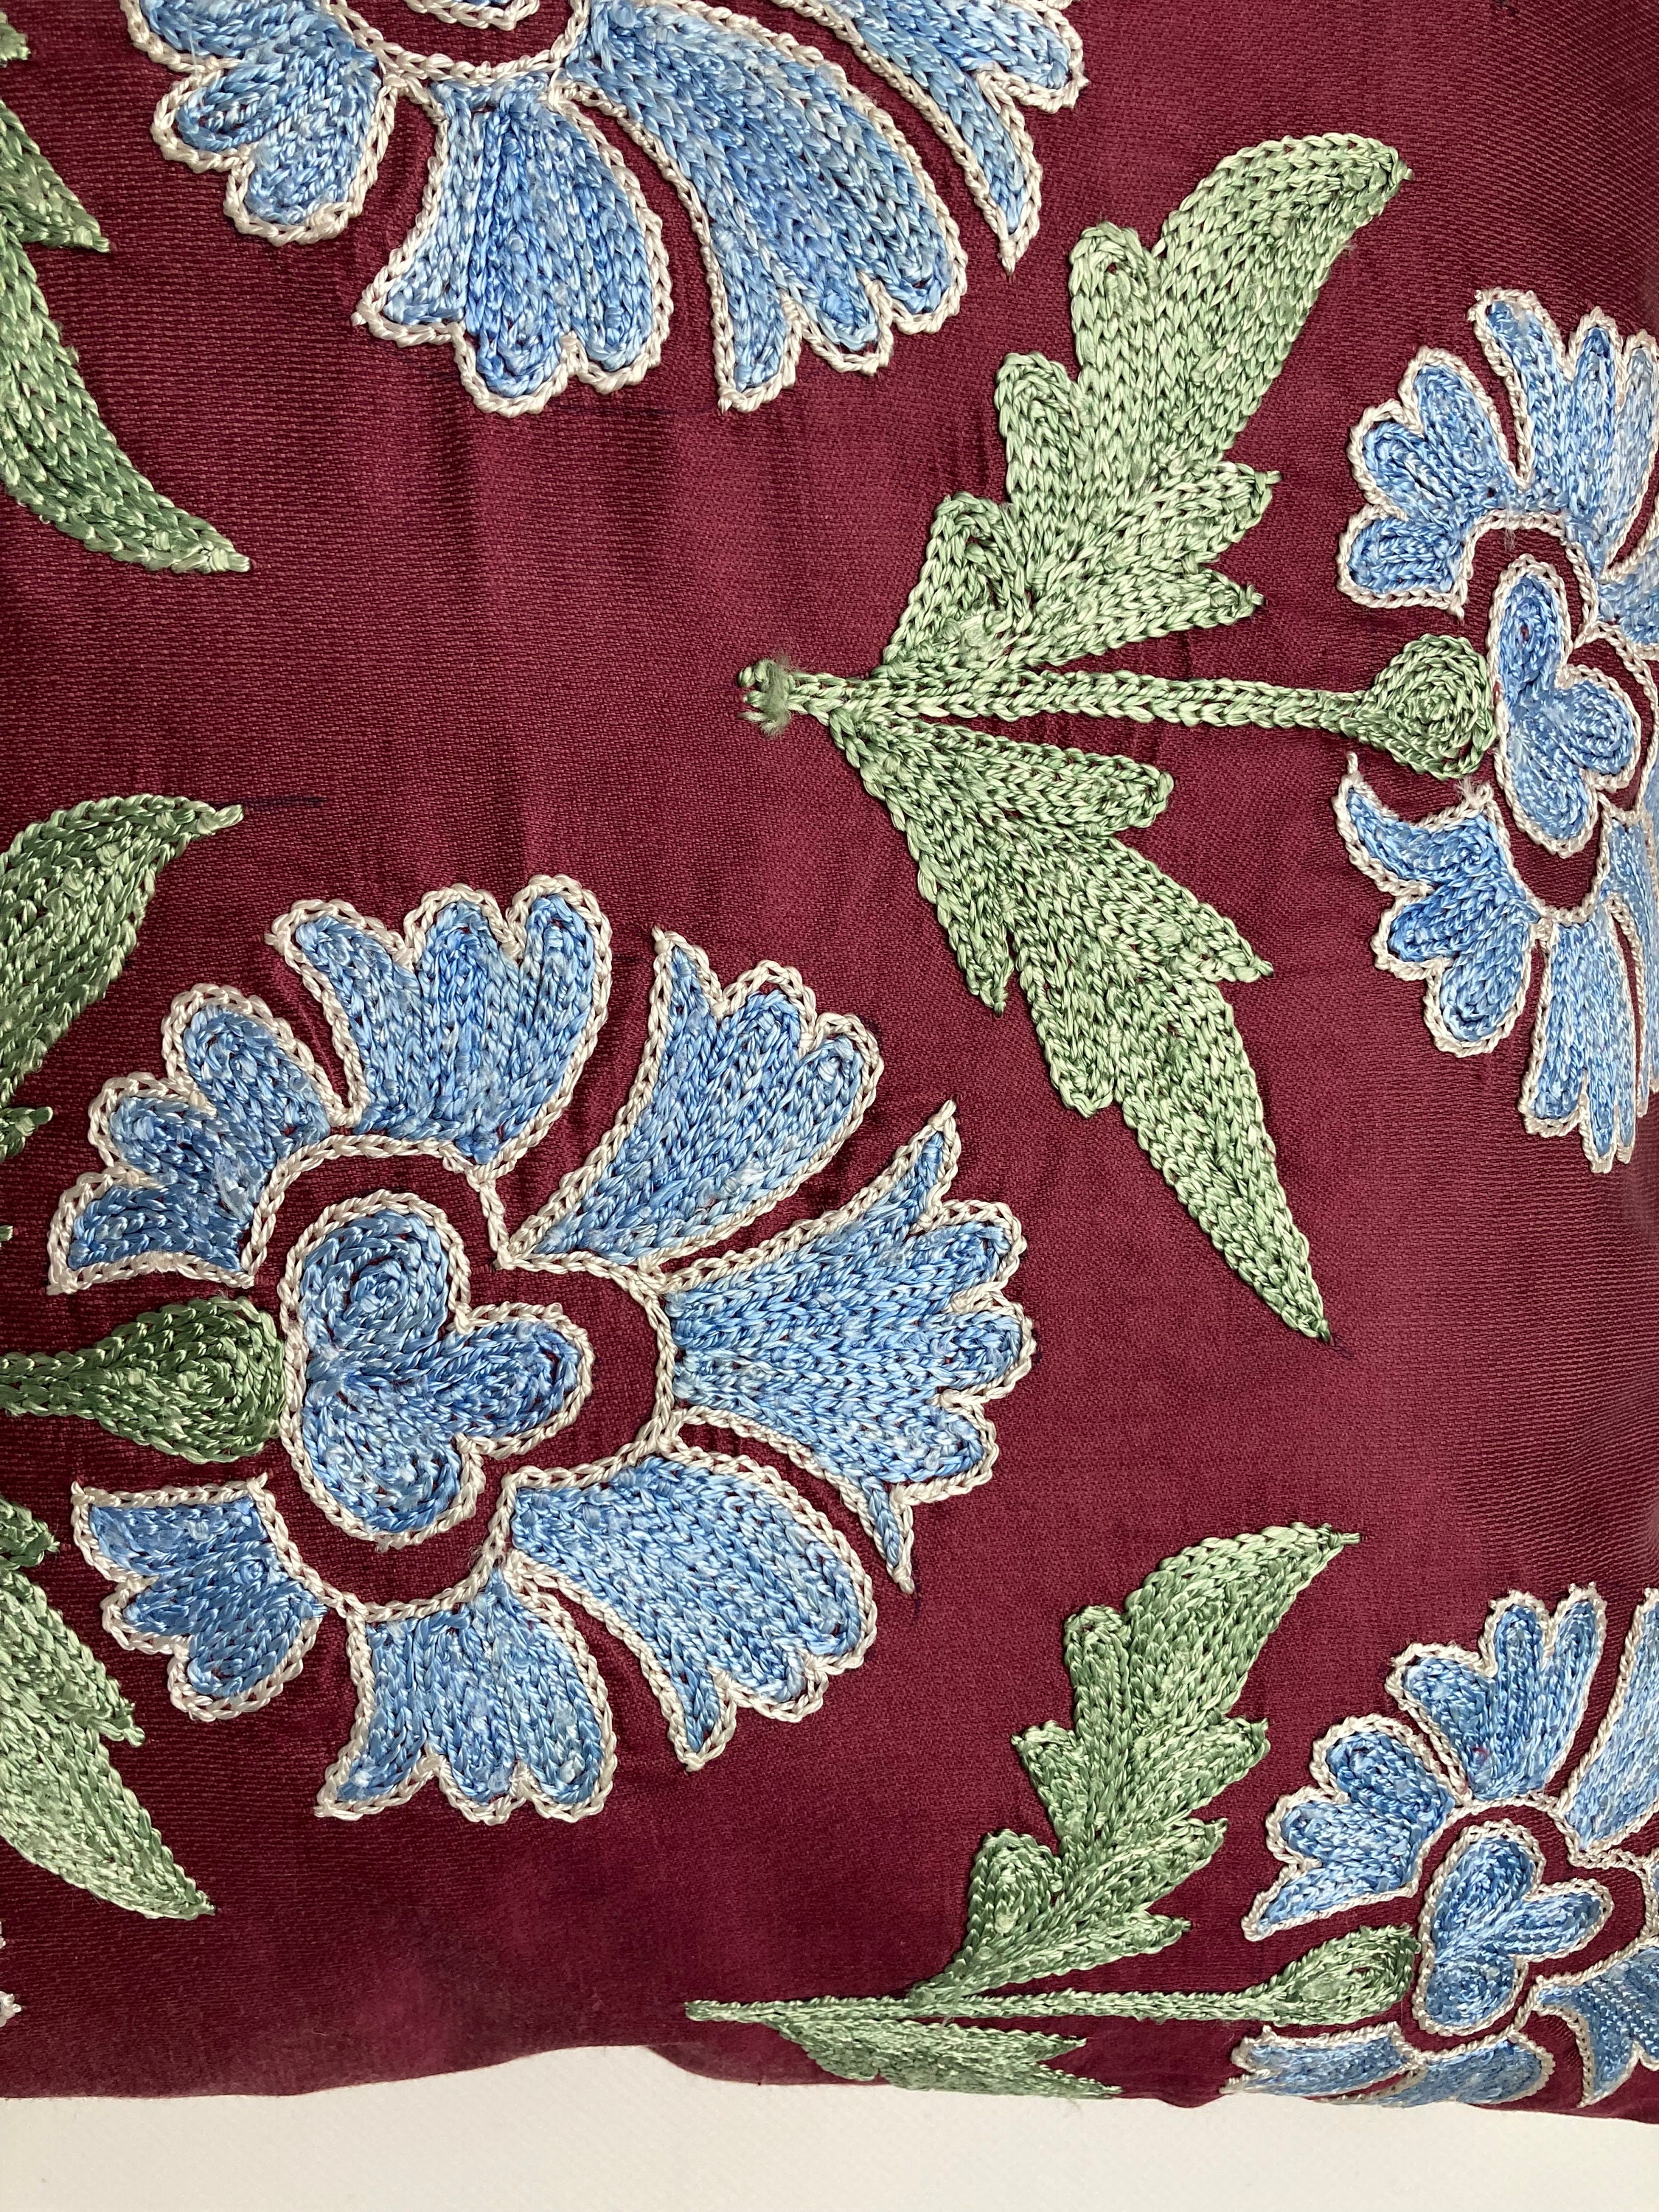 Copricuscino uzbeko in seta rossa ricamato a mano, 45 cm x 45 cm 18 x18 -   Italia